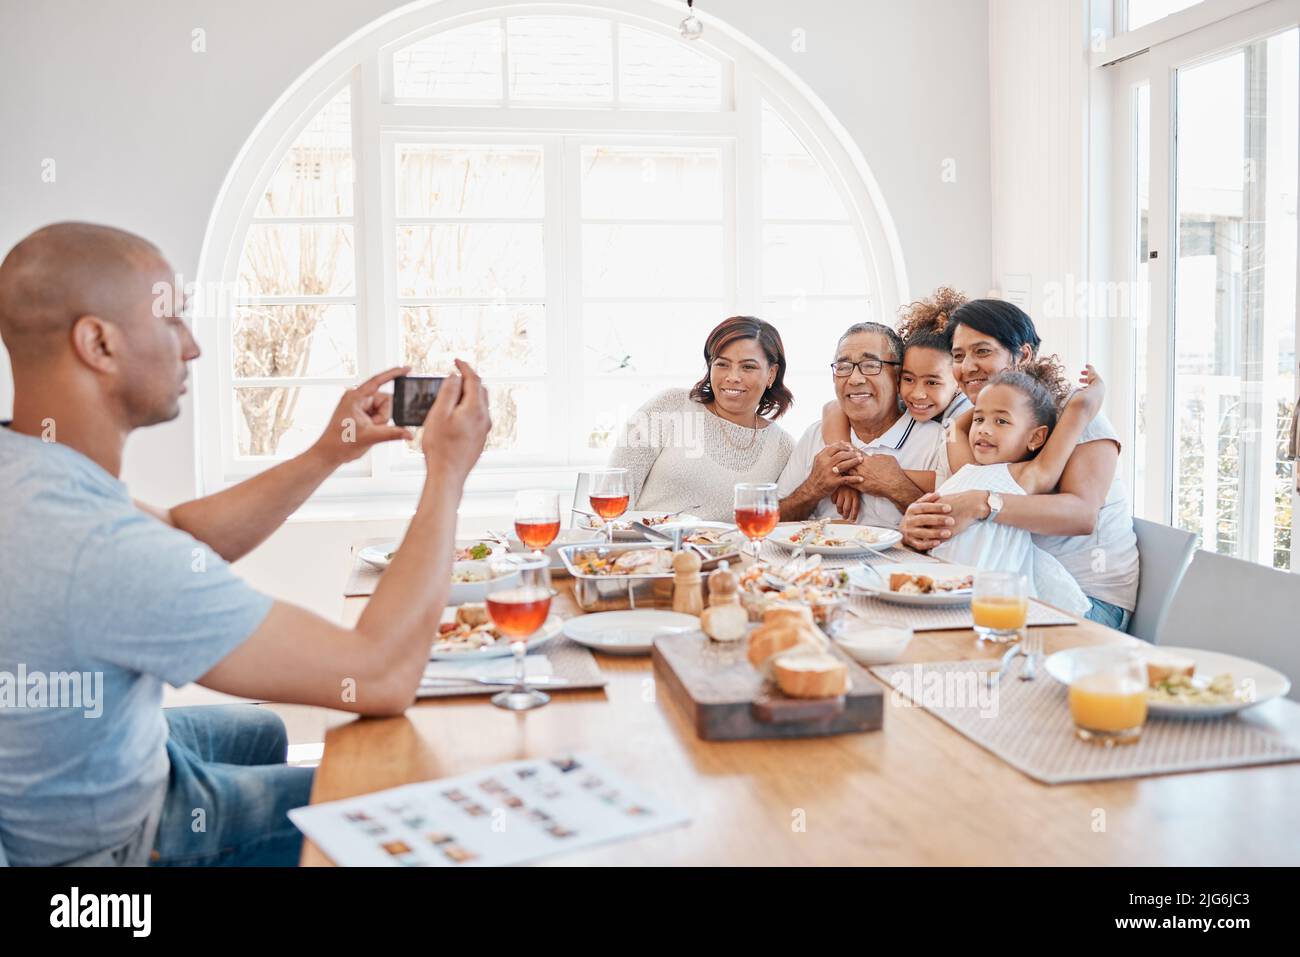 Je veux toujours me souvenir de ces moments. Photo d'un jeune père prenant des photos de sa famille pendant le déjeuner. Banque D'Images